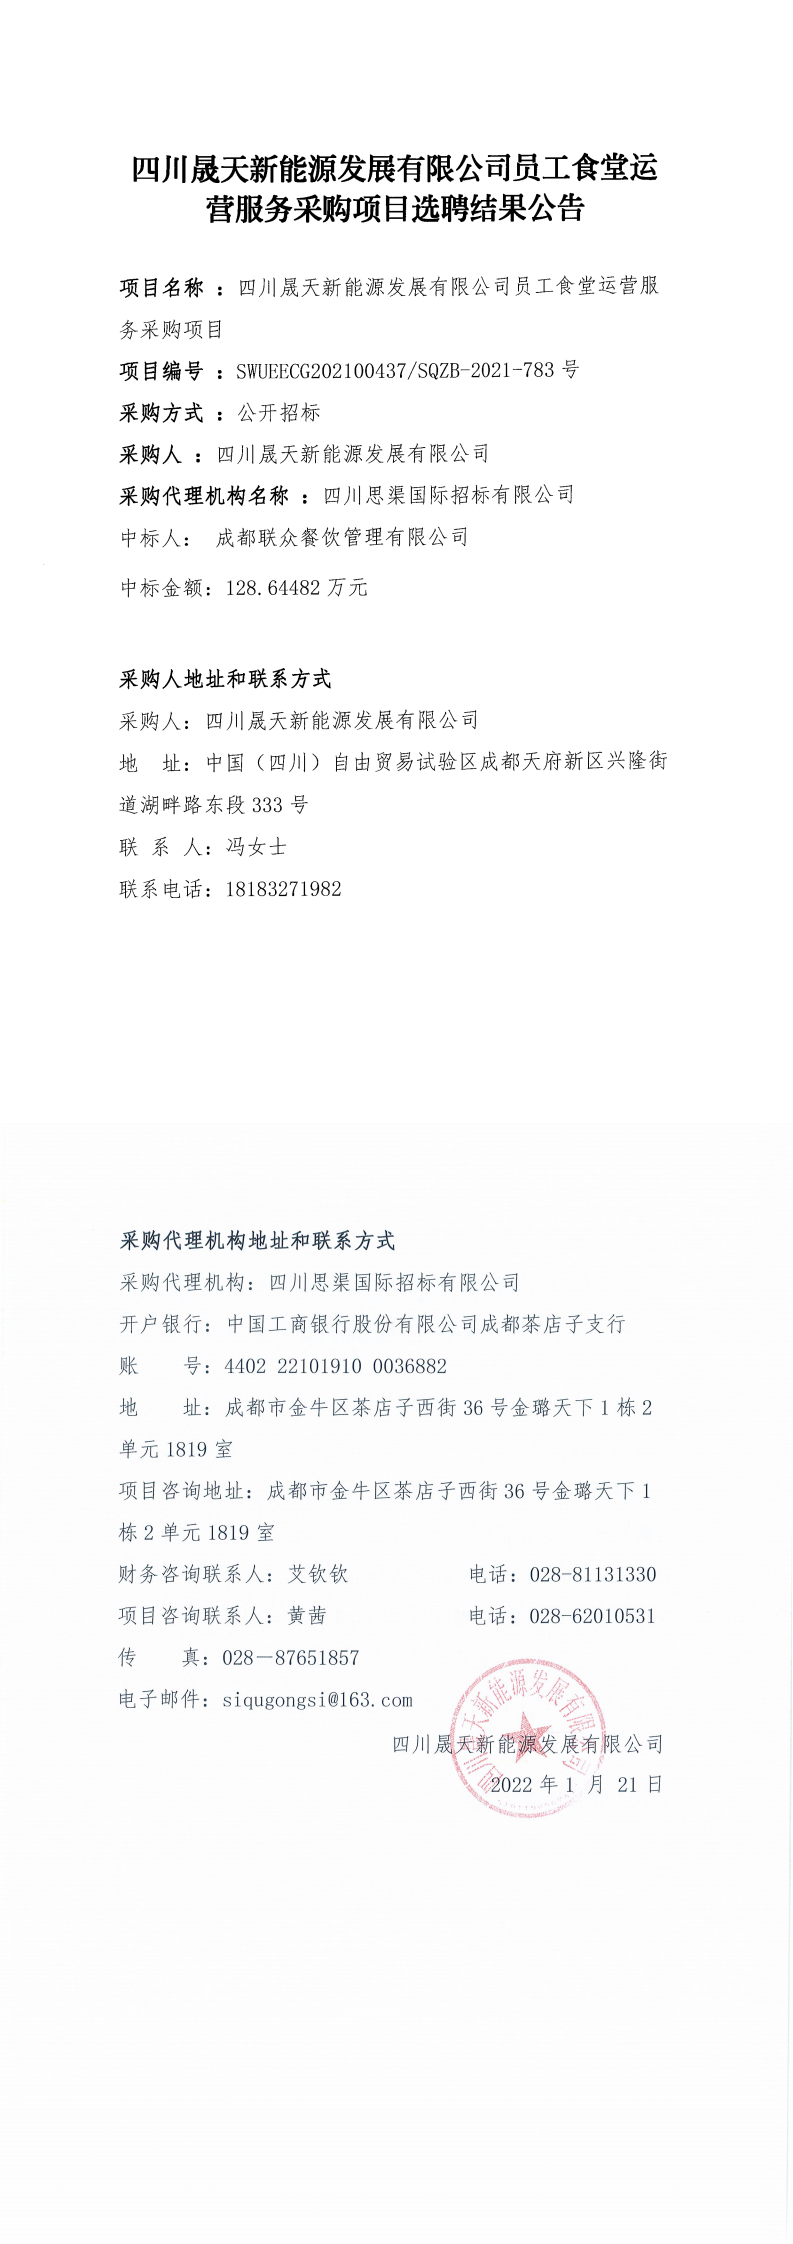 leyu乐鱼体育APP官方网站员工食堂运营服务采购项目选聘结果公告_0.png